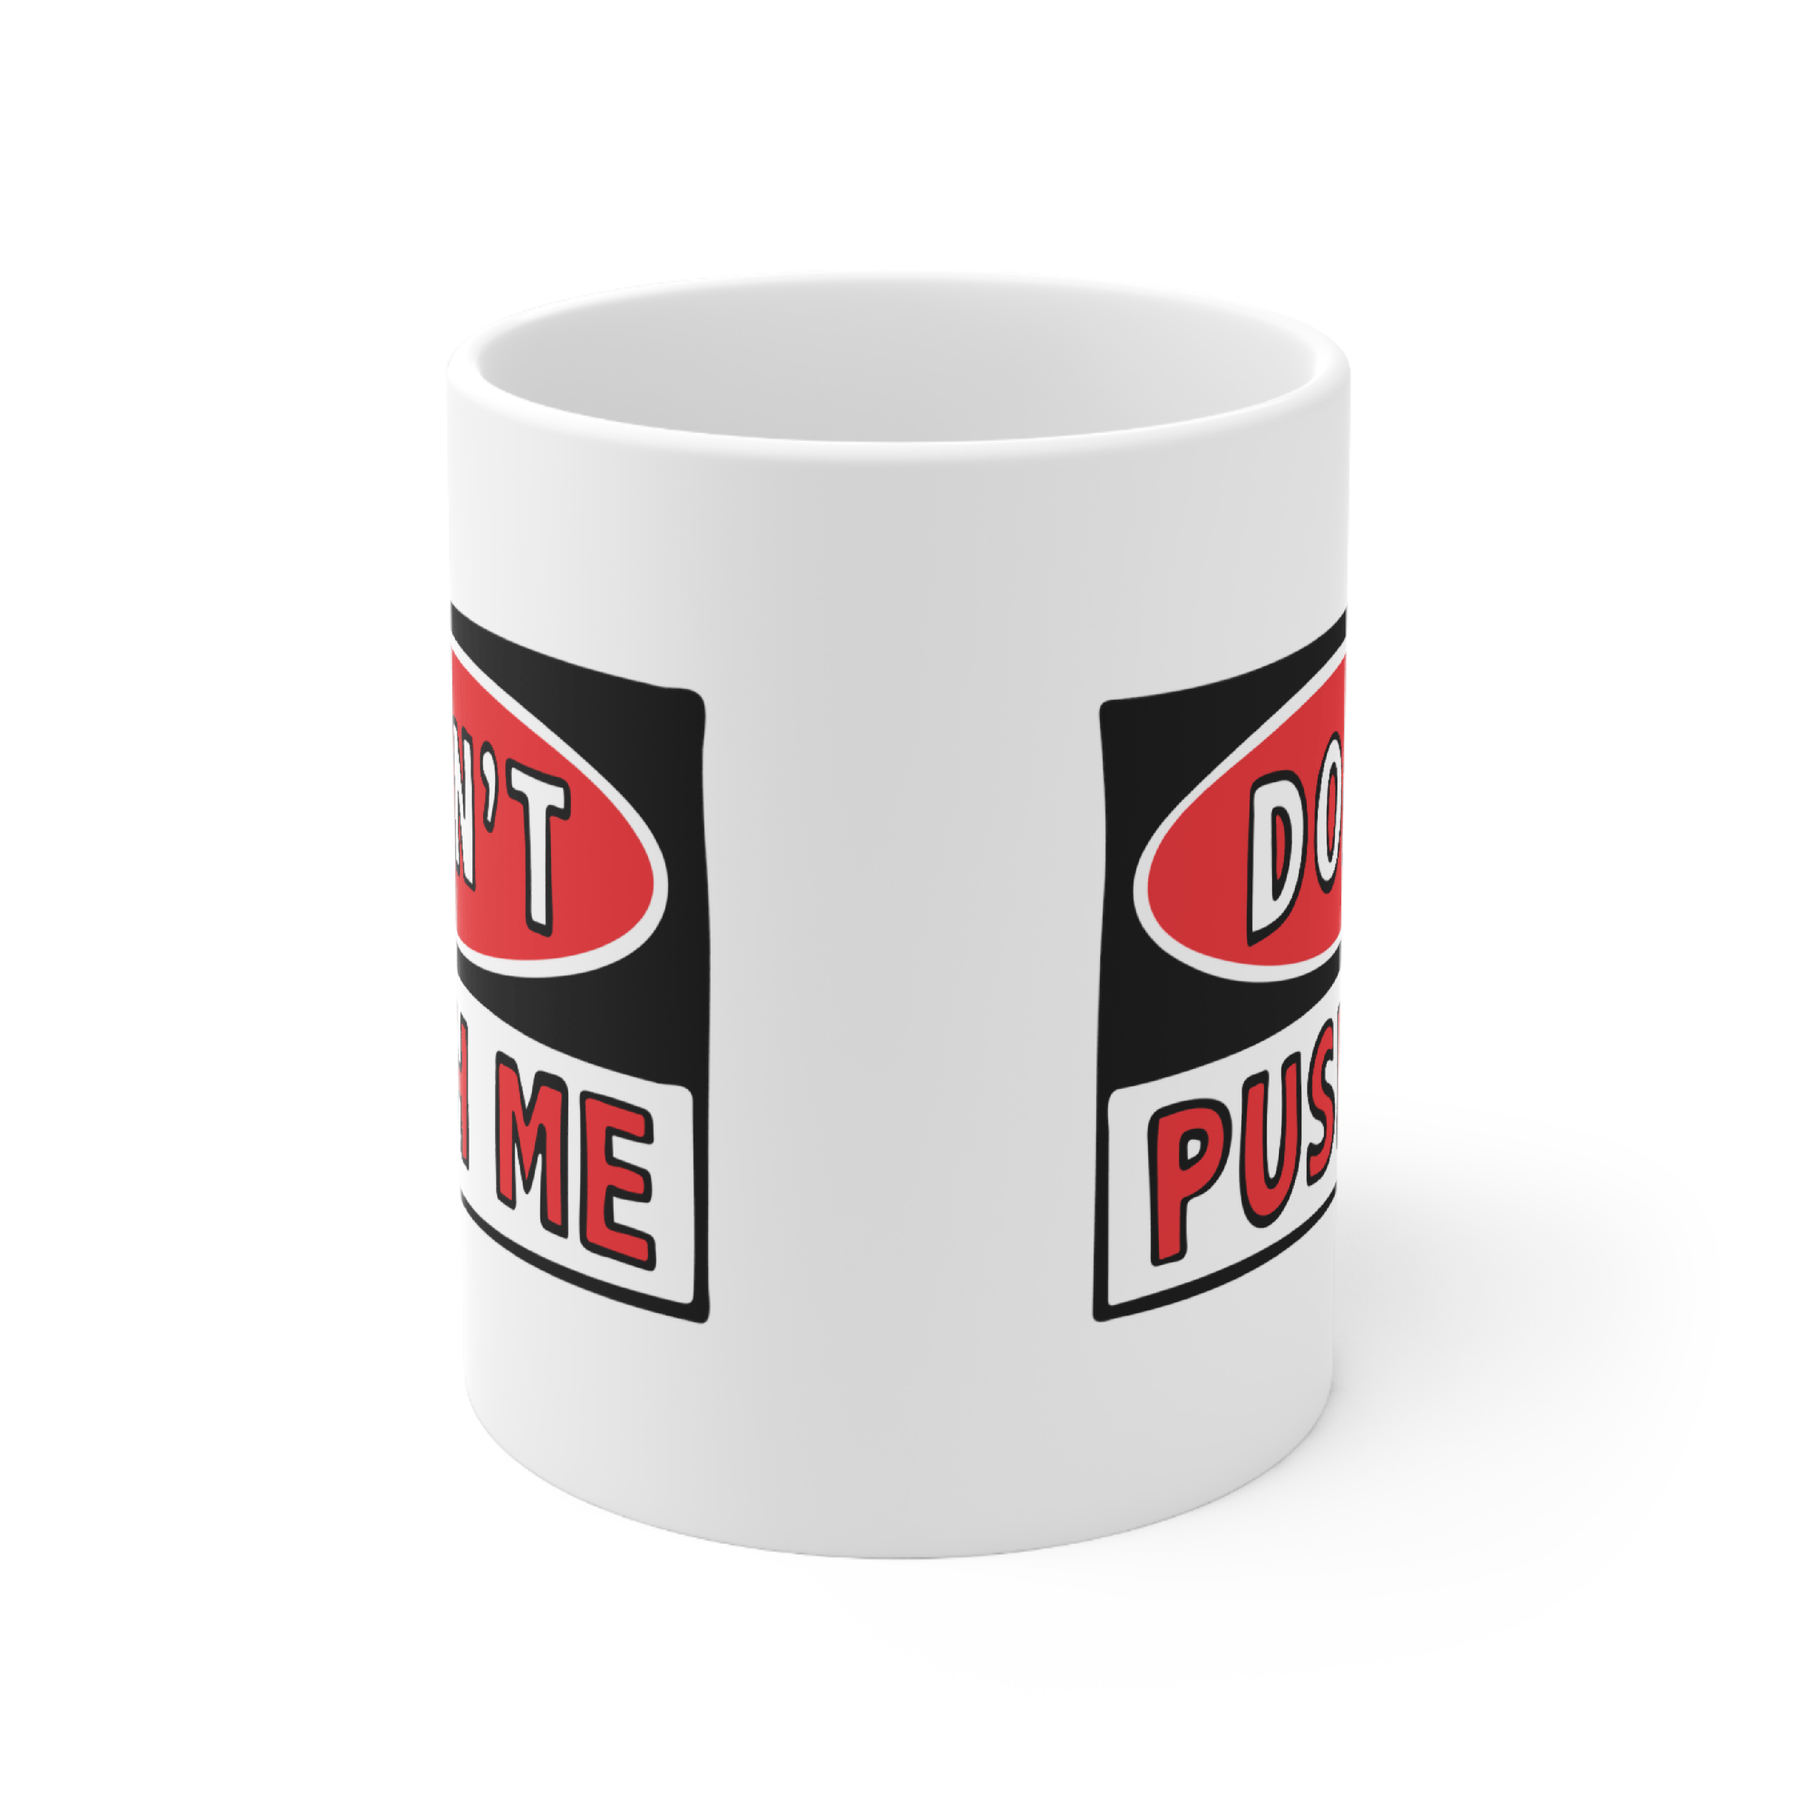 Don’t Push Me 🛑 - Coffee Mug